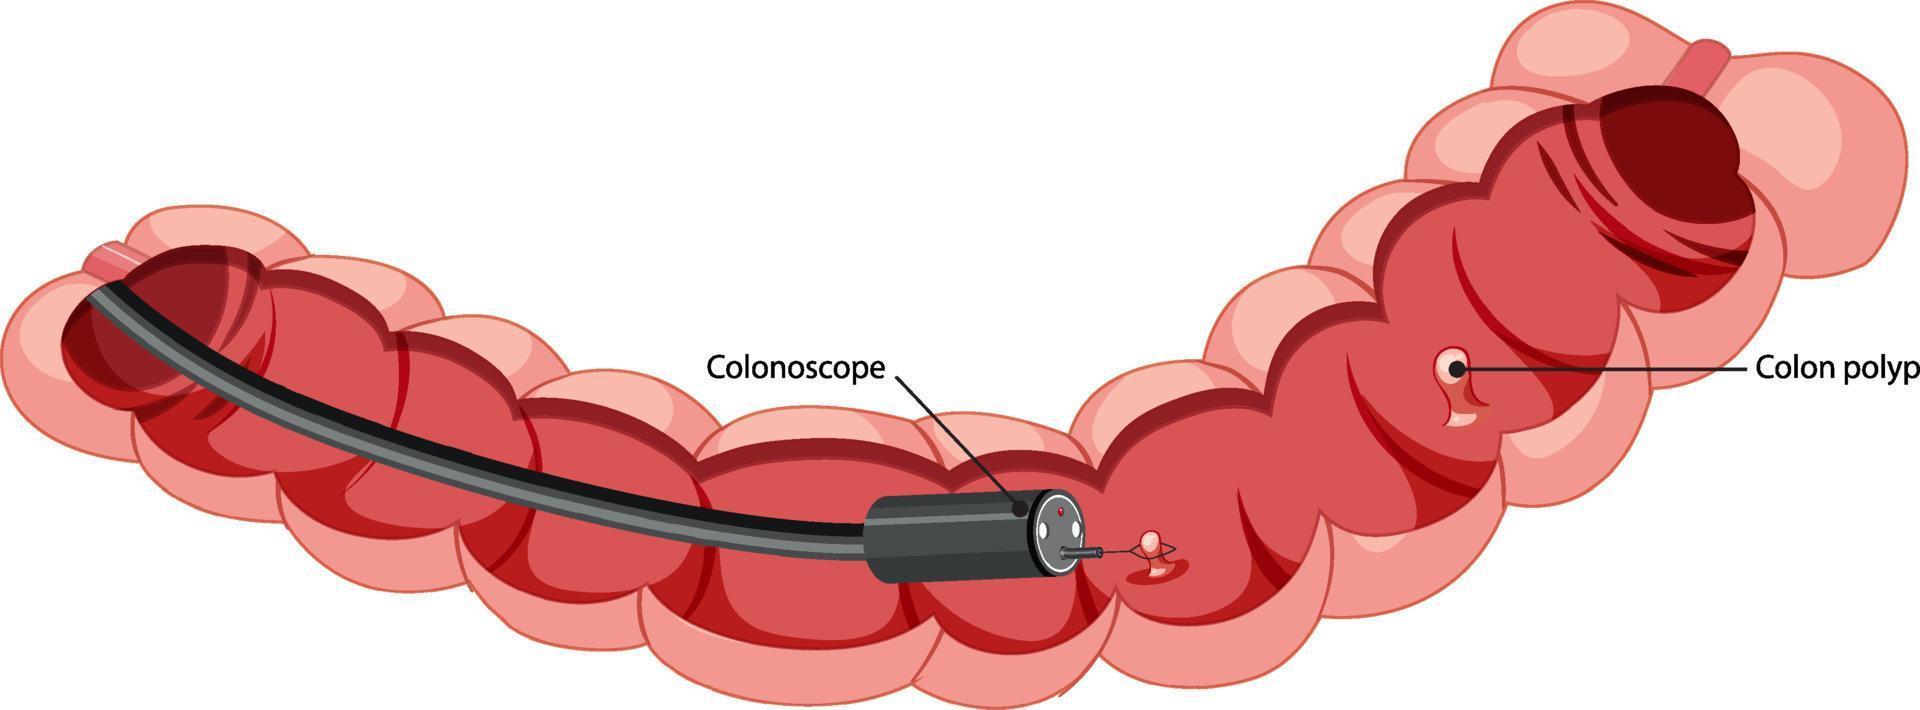 diagram met de binnenkant van de dikke darm met colonoscope vector